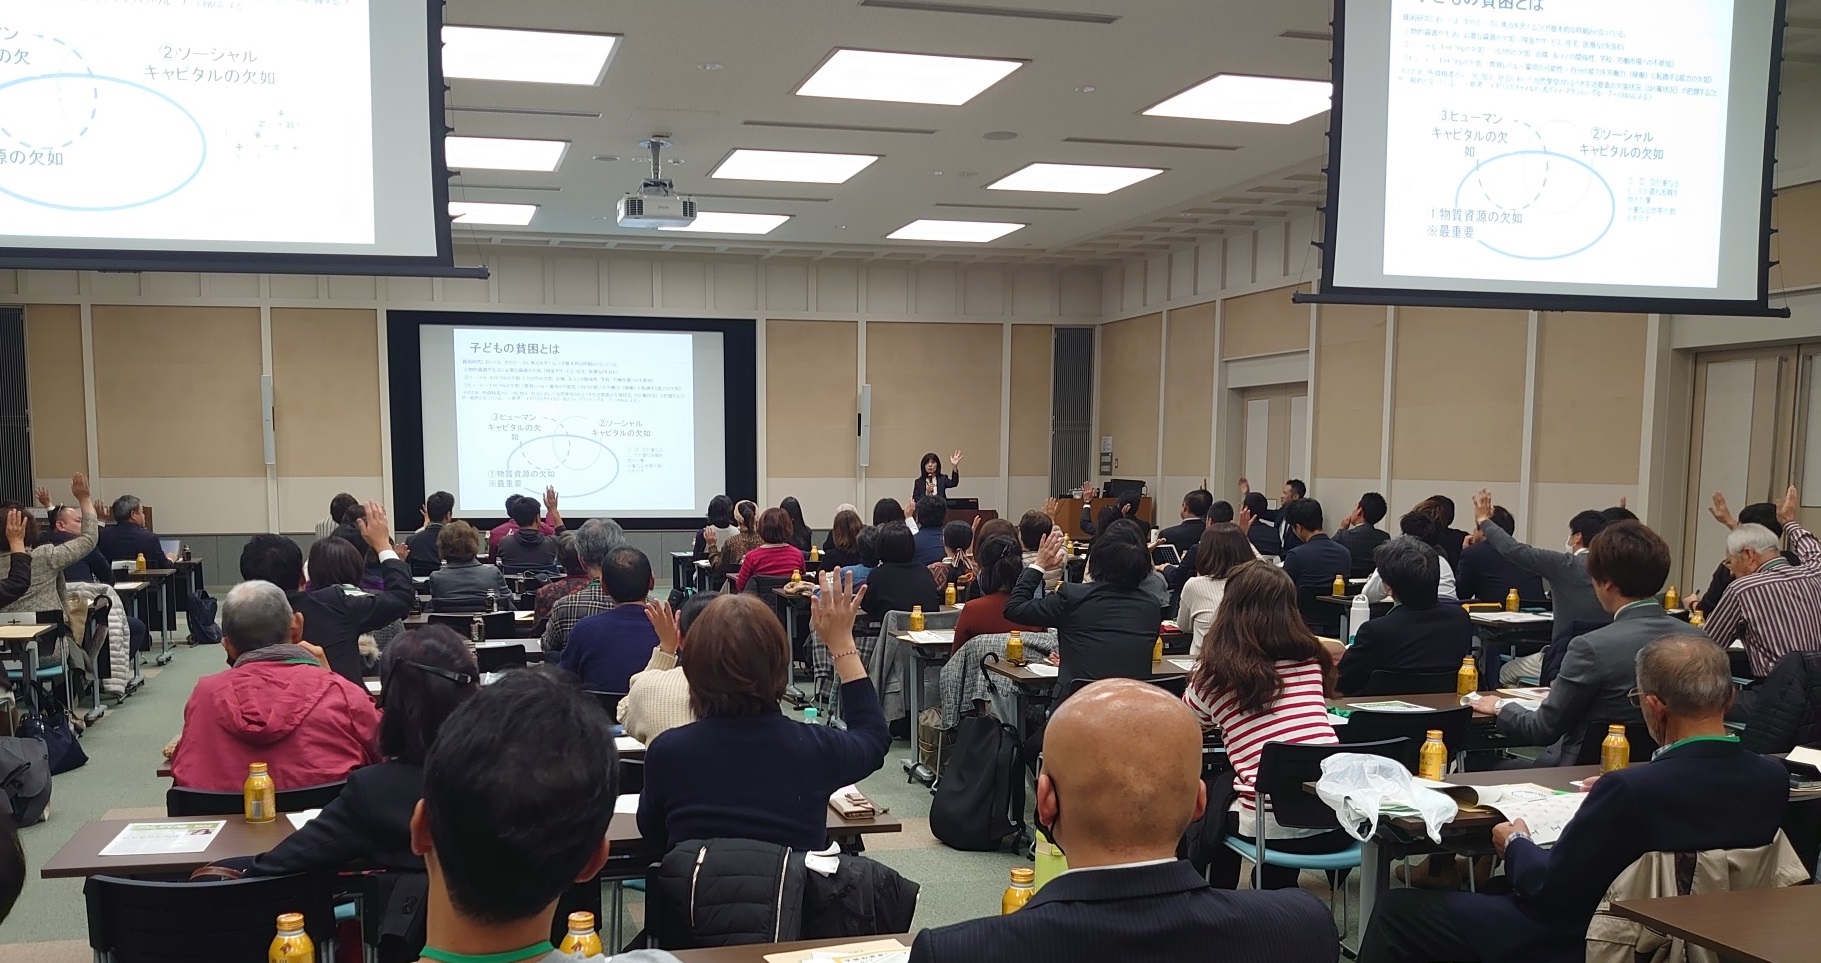 大阪府立大学の山野則子教授の基調講演に耳を傾ける参加者